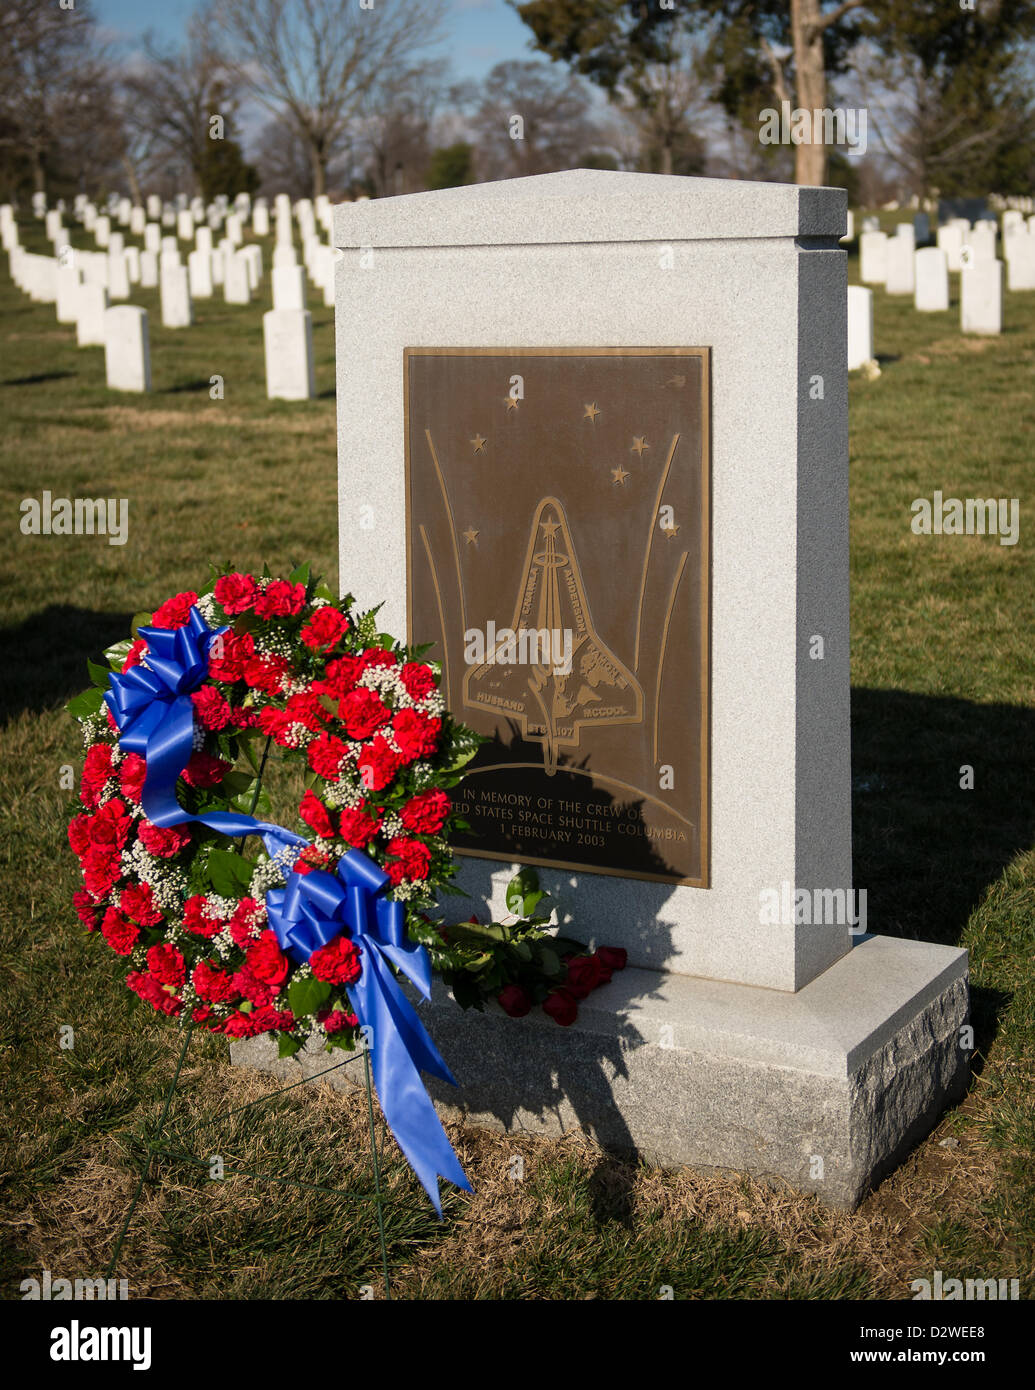 La navette spatiale Columbia Memorial avec une couronne commémorative dans le cadre de la Journée du souvenir de la NASA le 1 février 2013 au cimetière national d'Arlington, Arlington, VA. Les couronnes ont été déposées à la mémoire de ces hommes et femmes qui ont perdu leur vie dans la quête de l'exploration spatiale. Banque D'Images